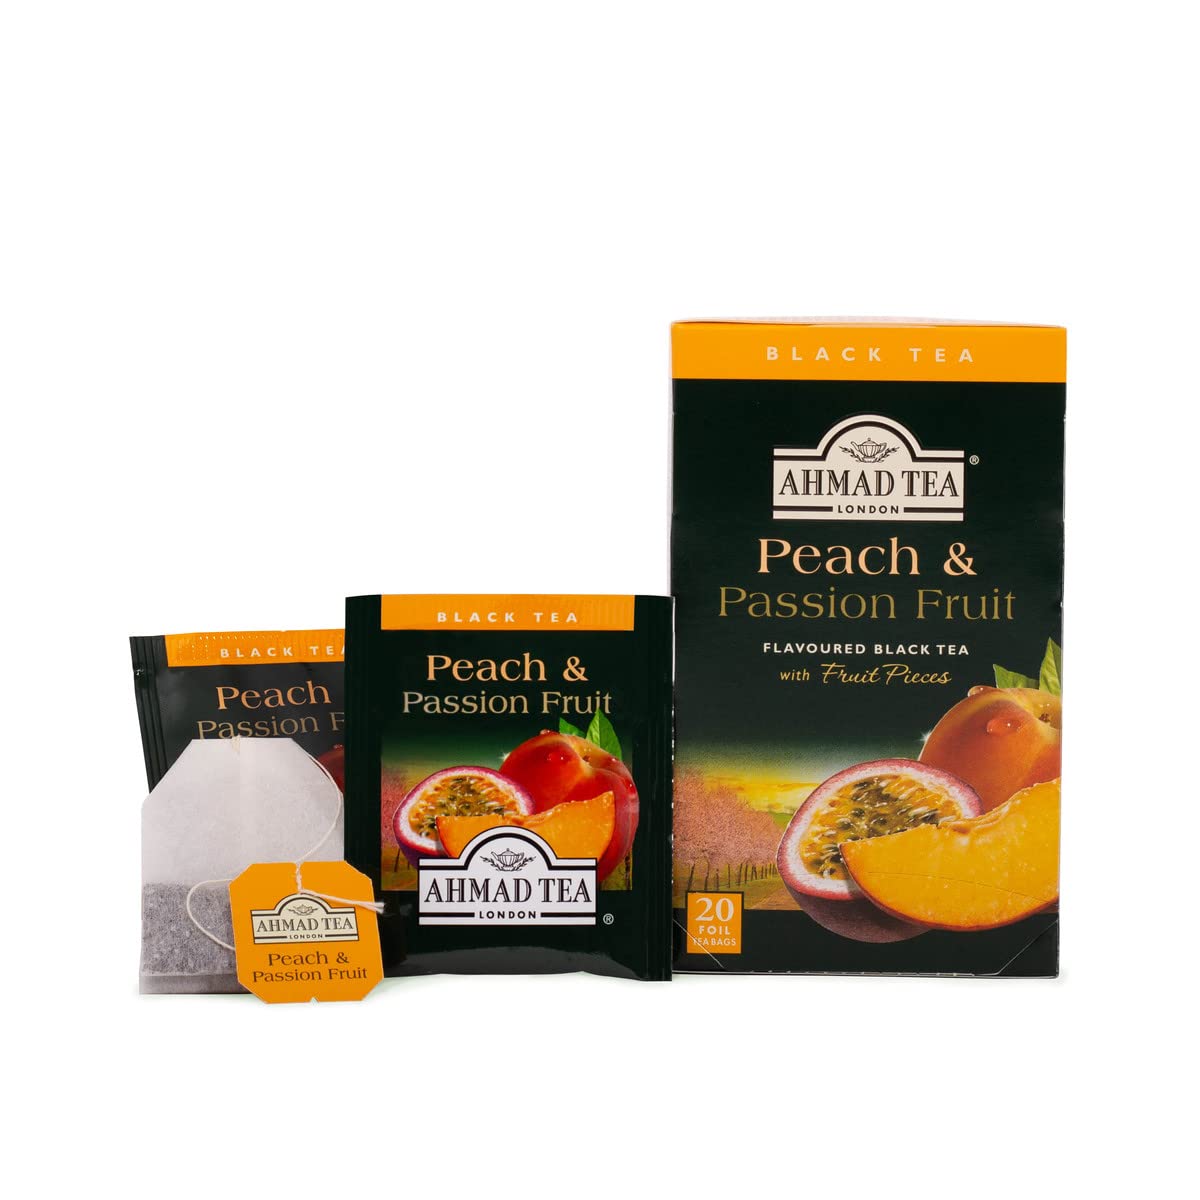 Ahmad Tea Black Tea, Peach And Passion Fruit.